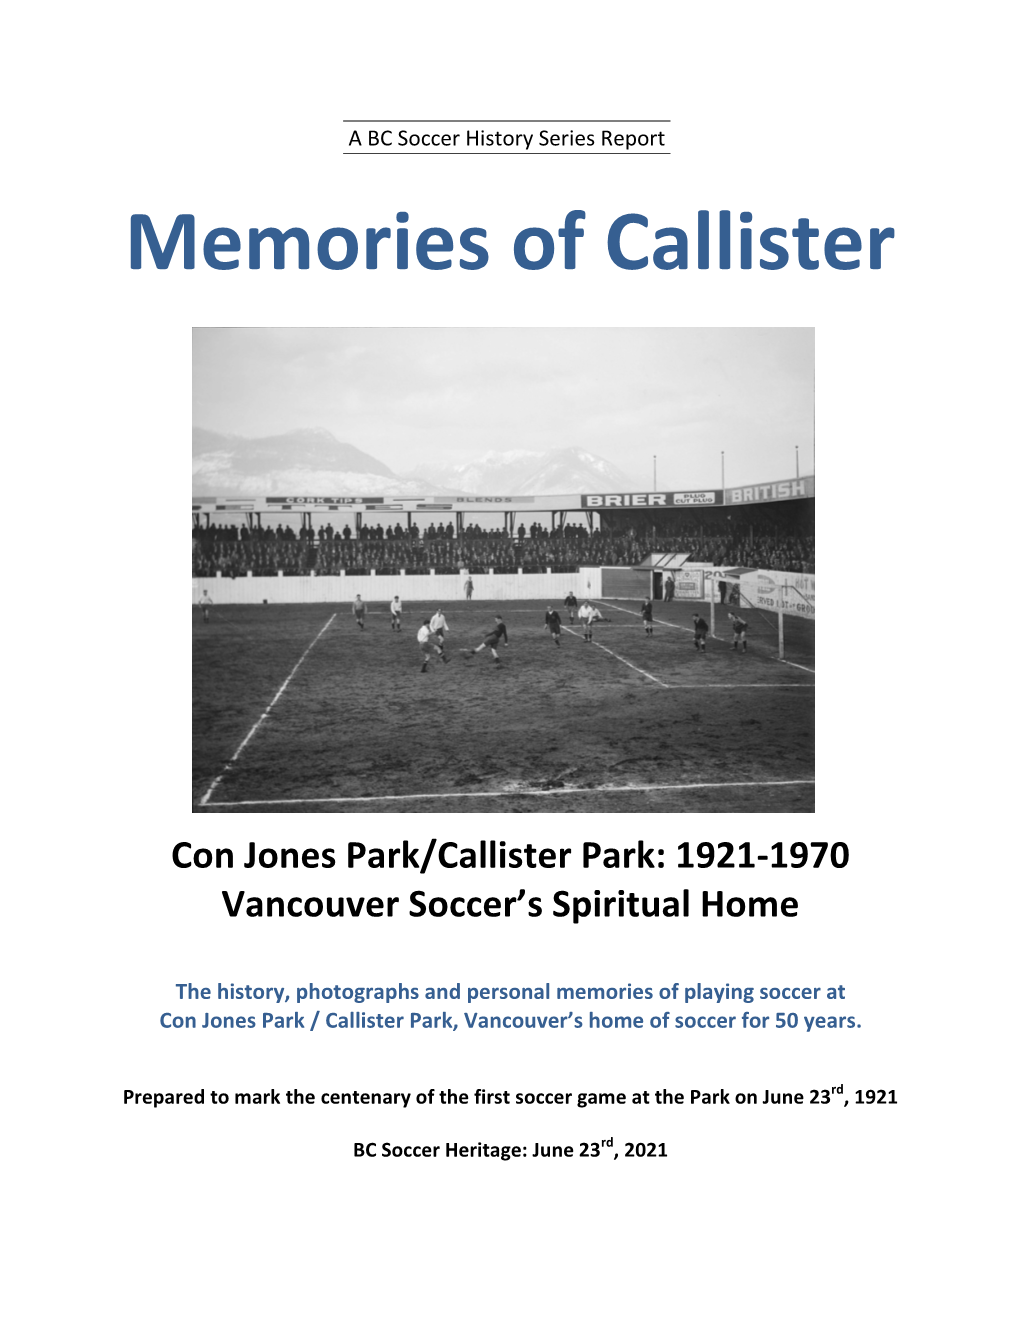 Memories of Callister